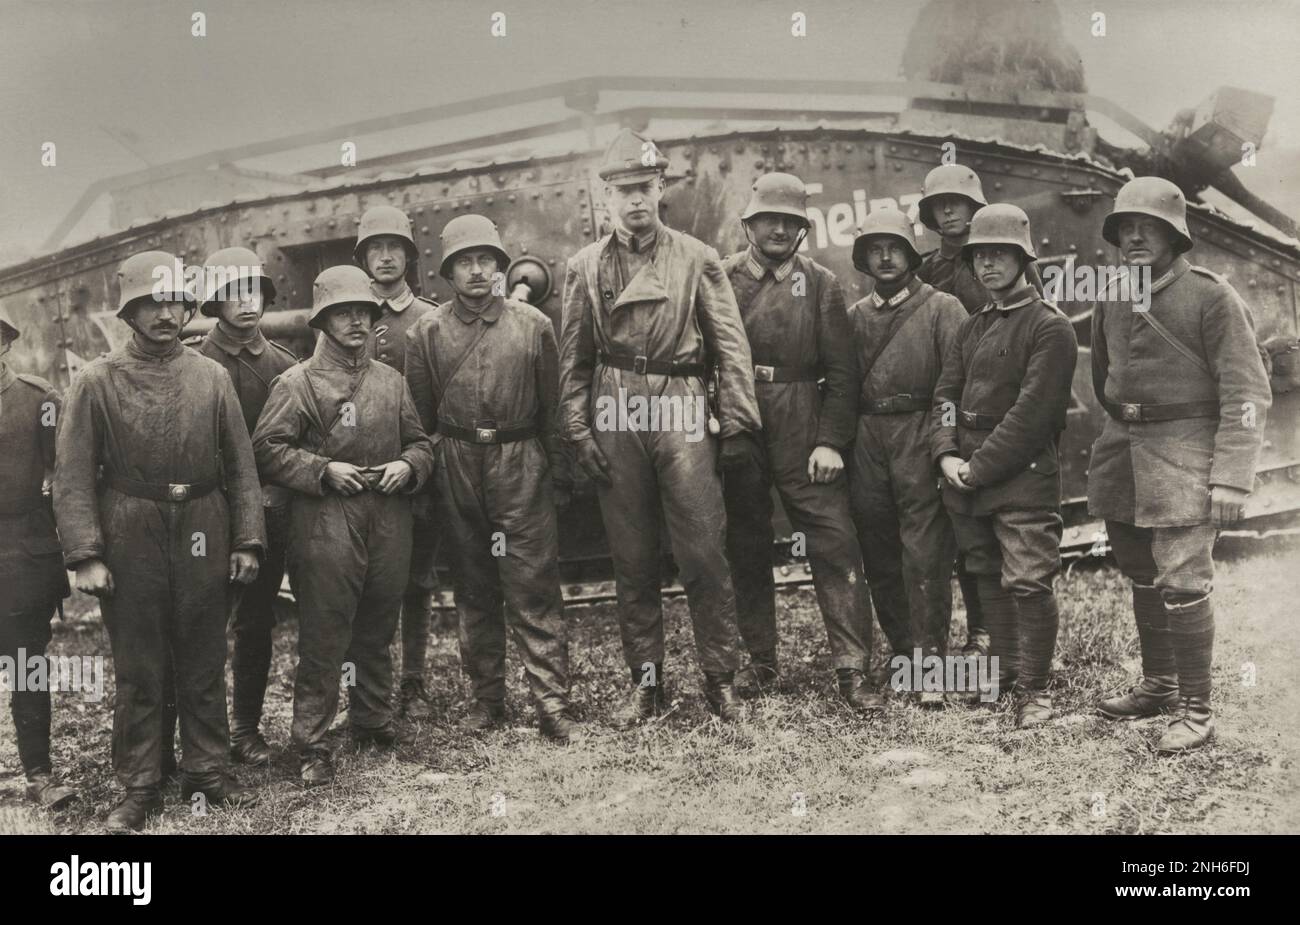 1914-1918. Prima guerra mondiale Gruppo di soldati tedeschi che hanno tranquillamente allineato davanti ad un carro armato Marco IV chiamato 'Heinz'. Secondo l'iscrizione, è l'equipaggio del veicolo. Foto Stock